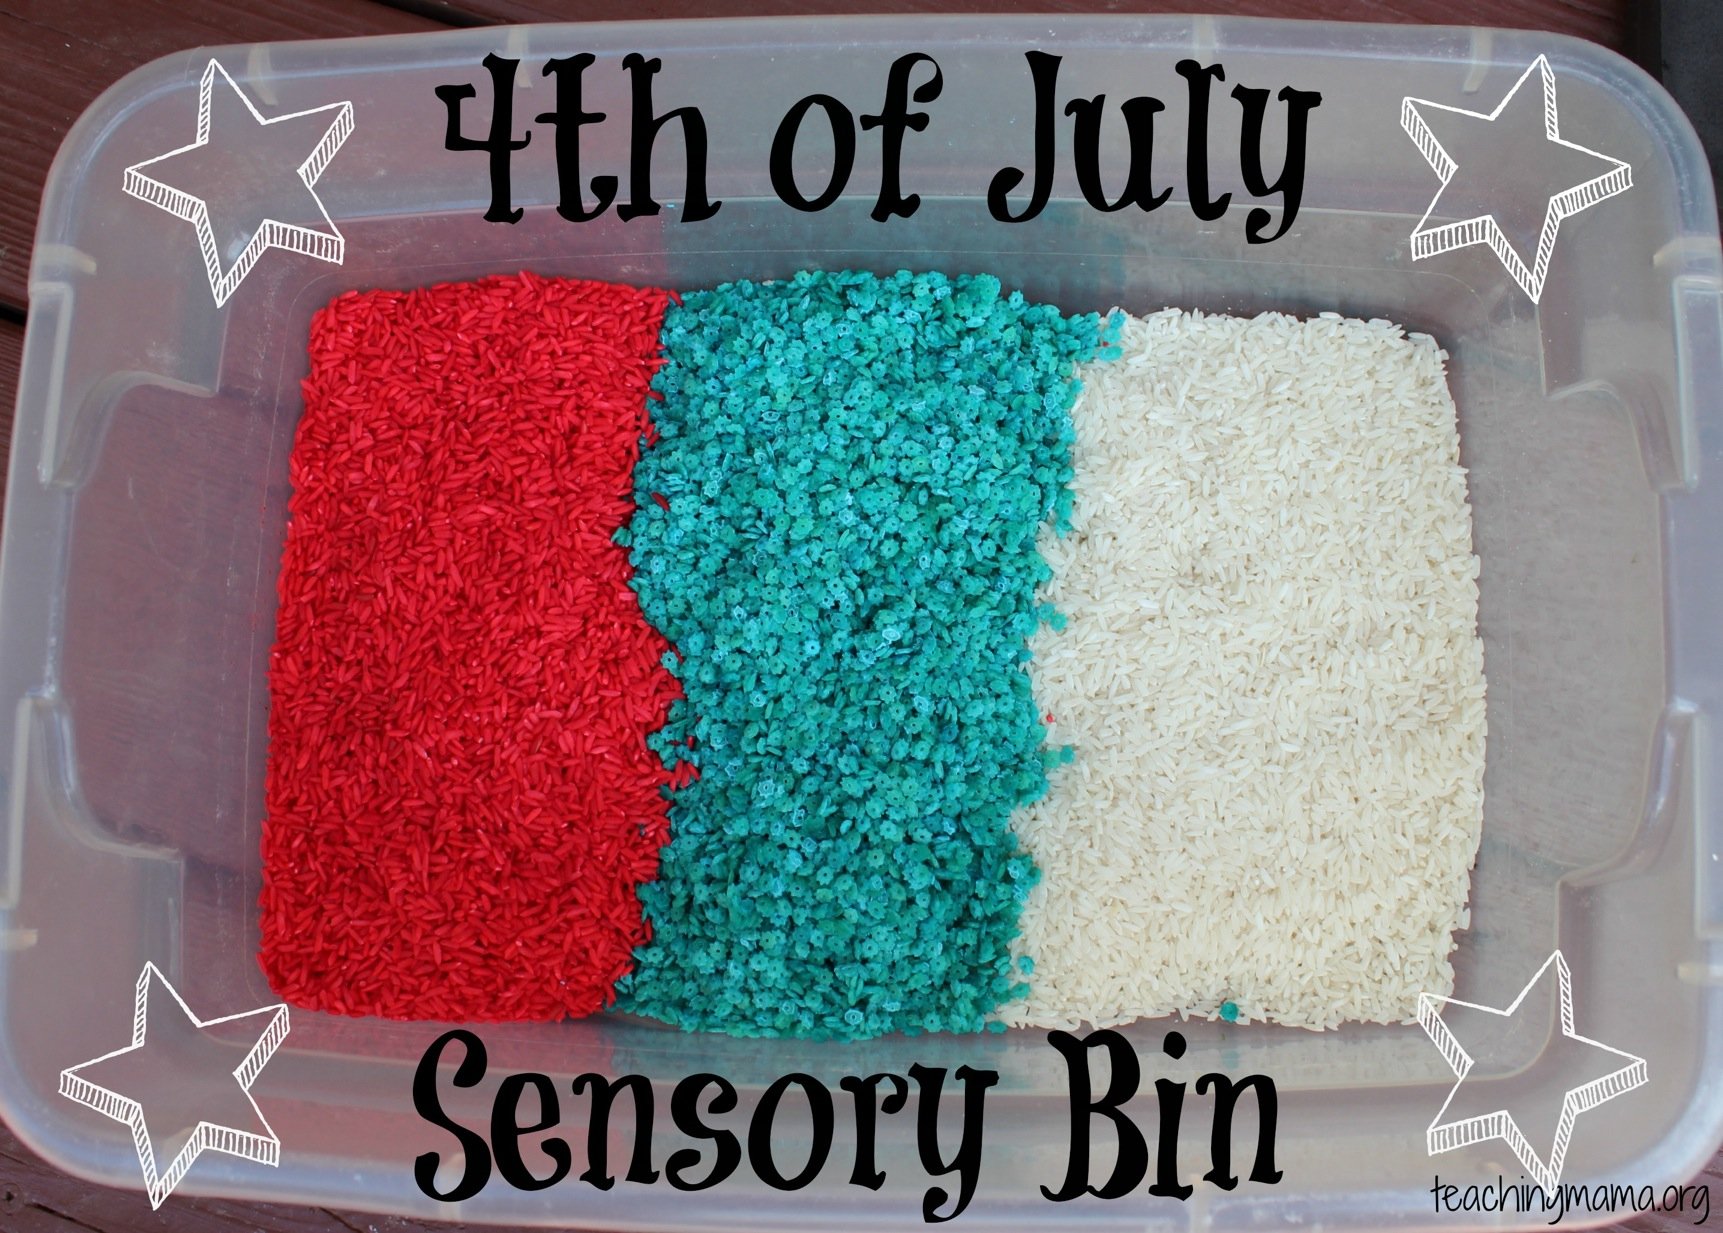 4th of july sensory bin